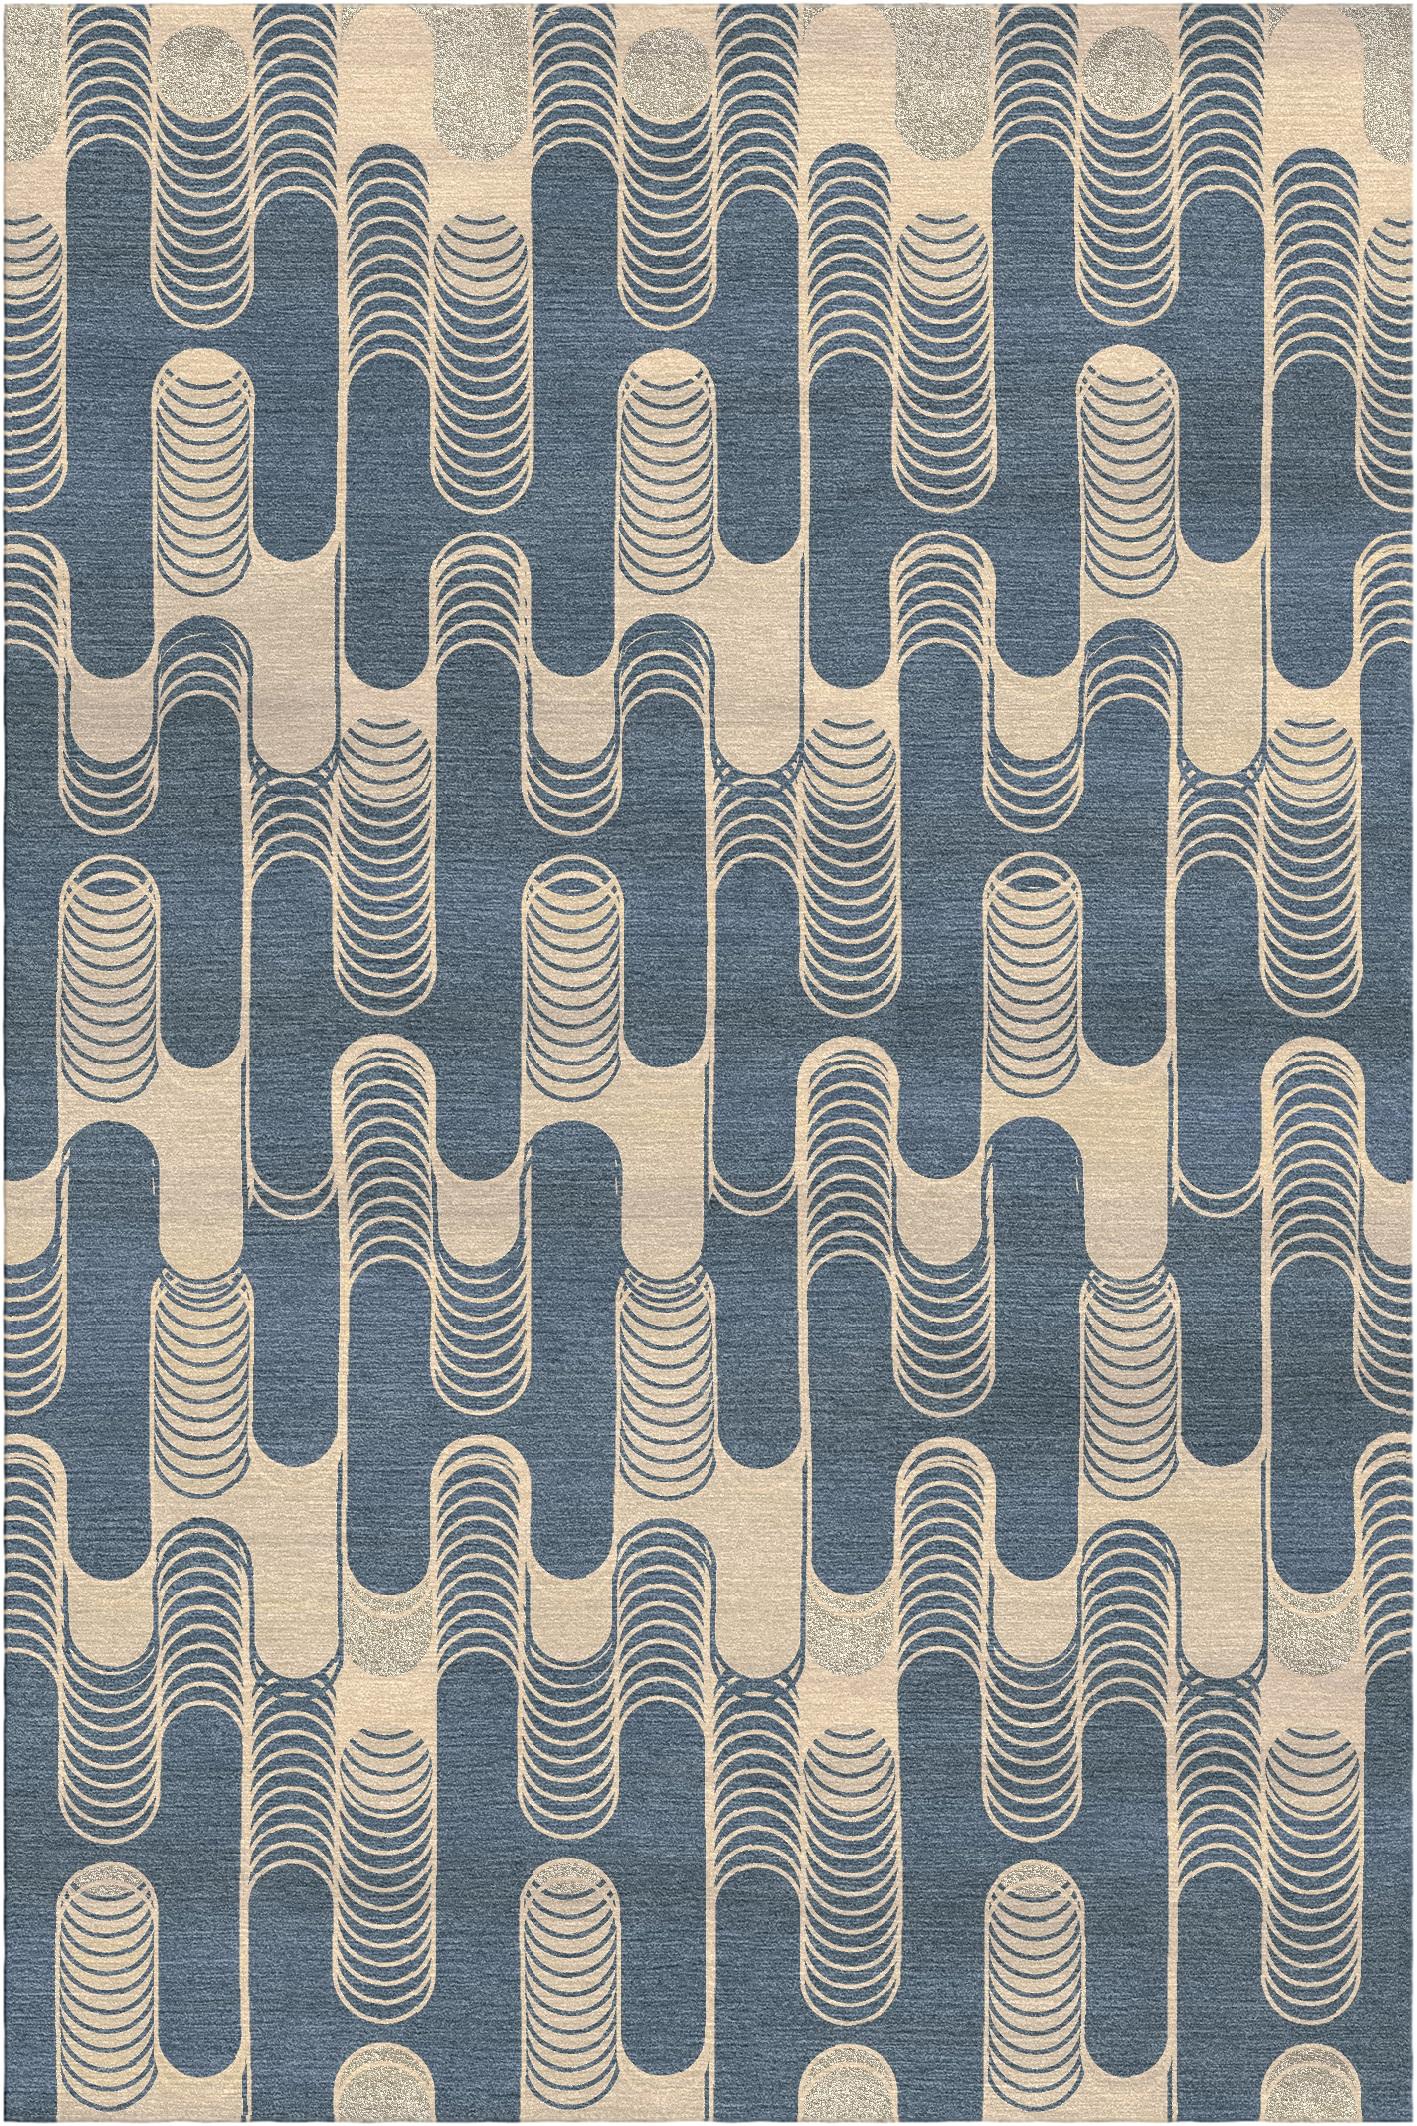 Tapis Settanta I de Giulio Brambilla
Dimensions : D 300 x L 200 x H 1,5 cm
MATERIAL : laine NZ, soie de bambou
Disponible dans d'autres couleurs.

Doté d'un design géométrique moderne à fort impact visuel, ce tapis s'imposera dans toute maison